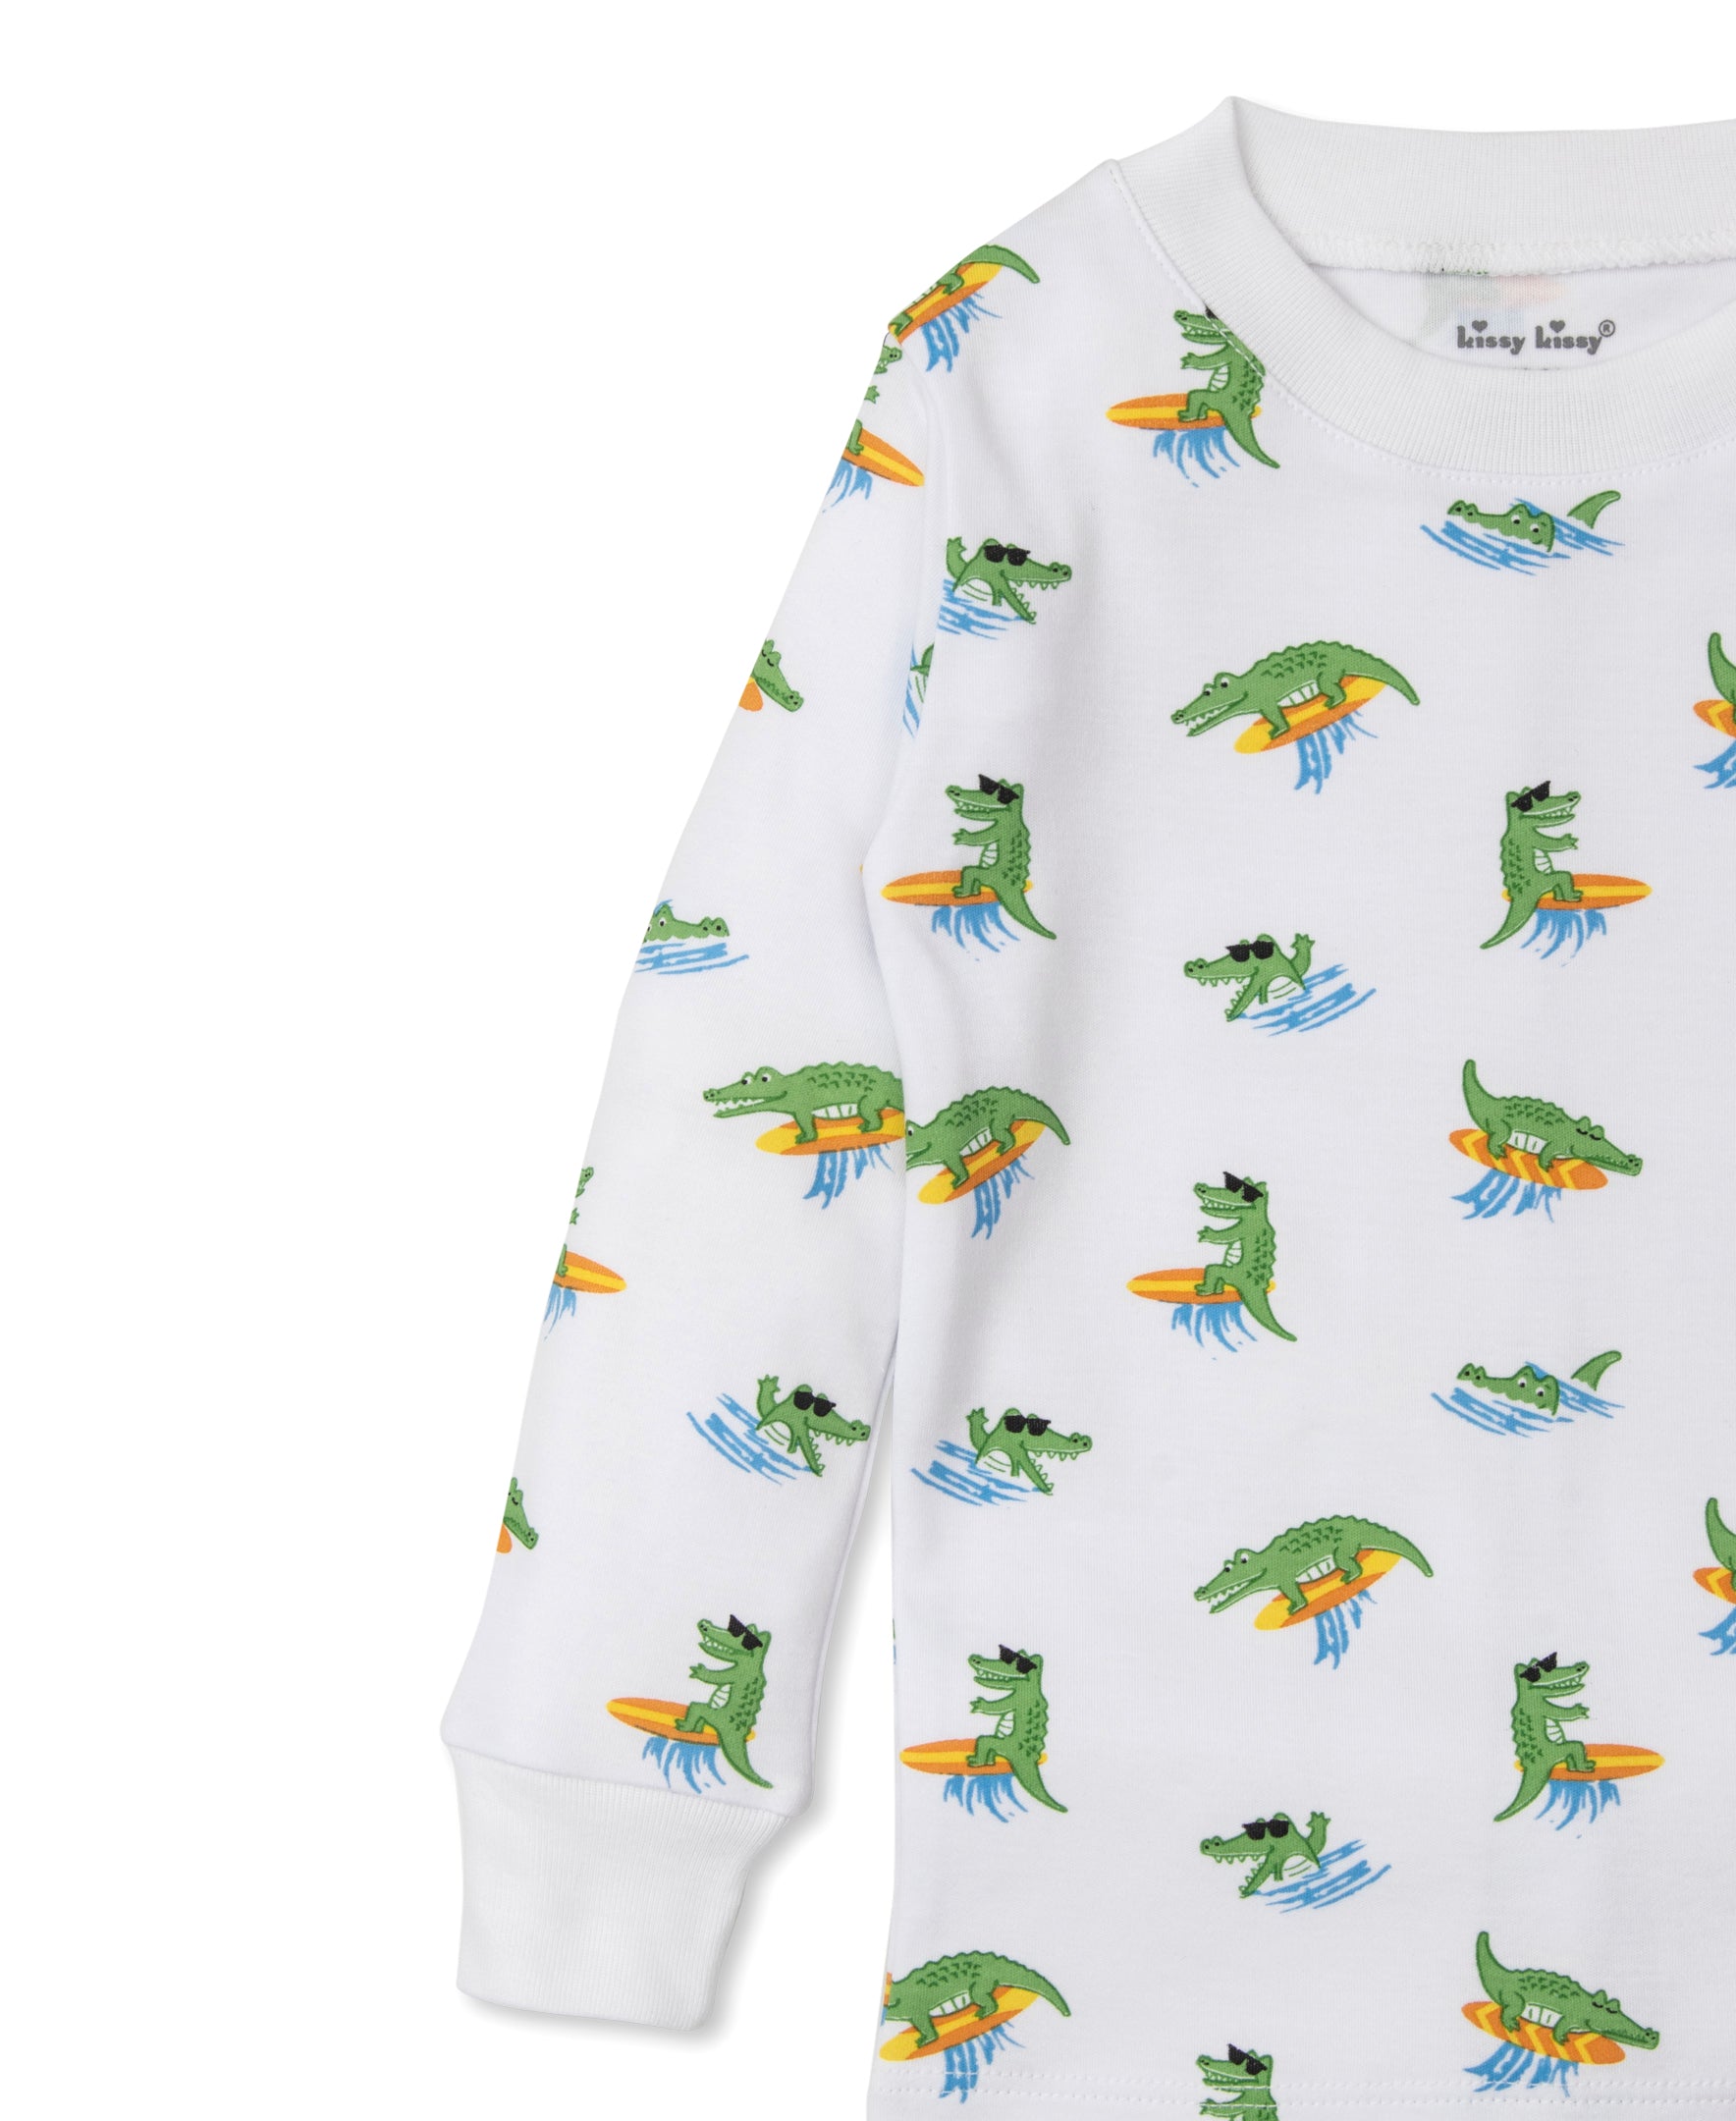 Crocodile Capers Toddler Pajama Set - Kissy Kissy